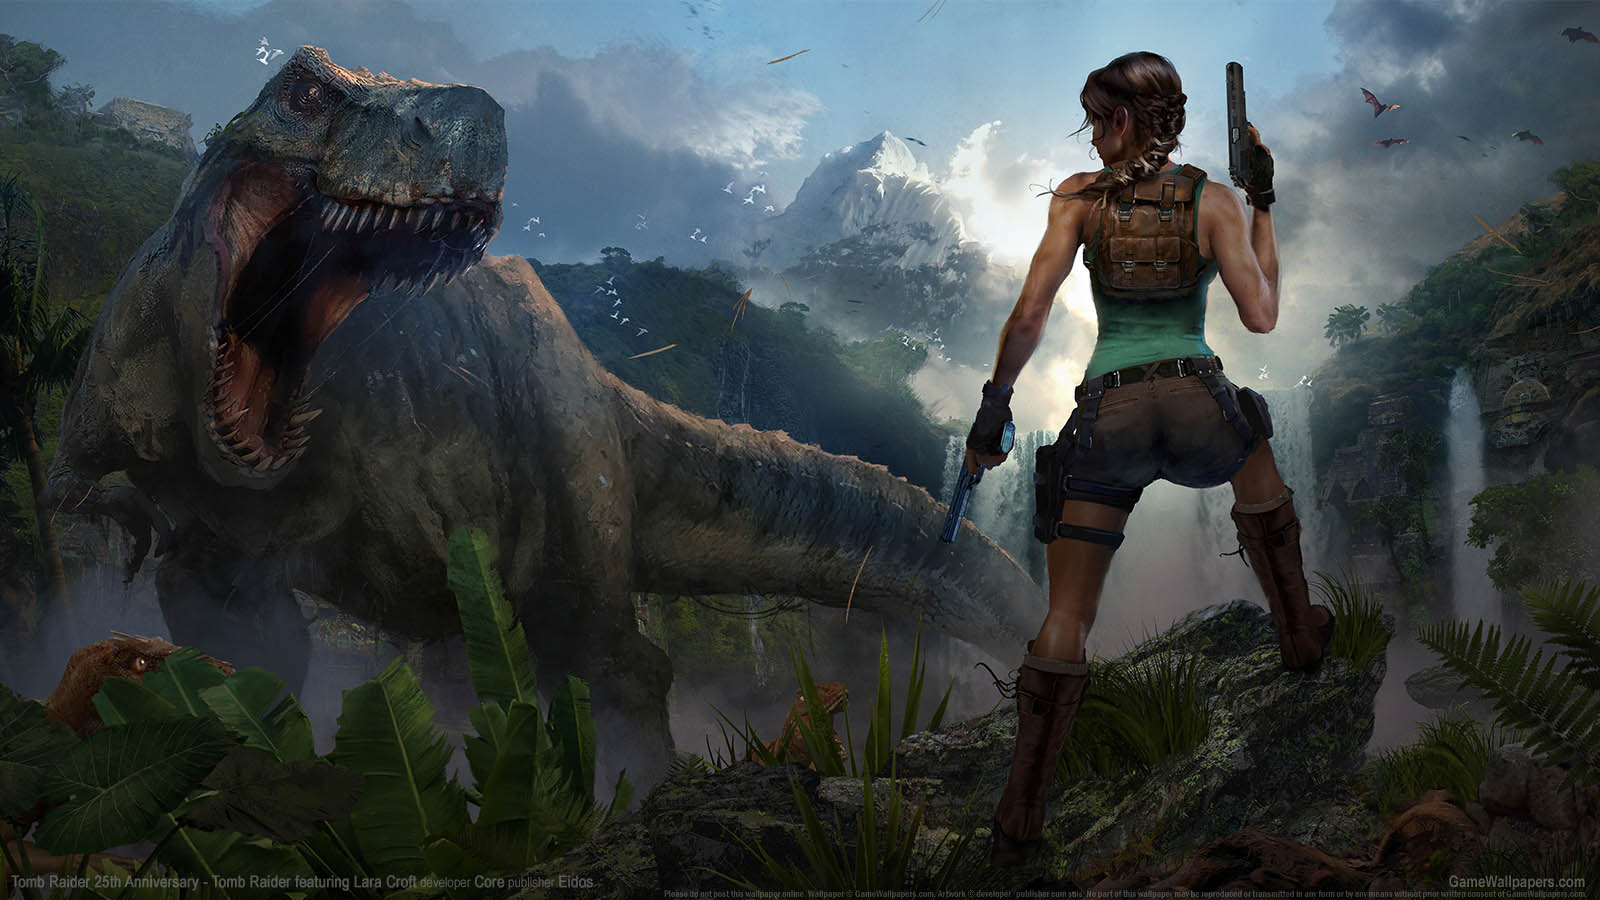 Tomb Raider 25th Anniversary fond d'cran 01 1600x900